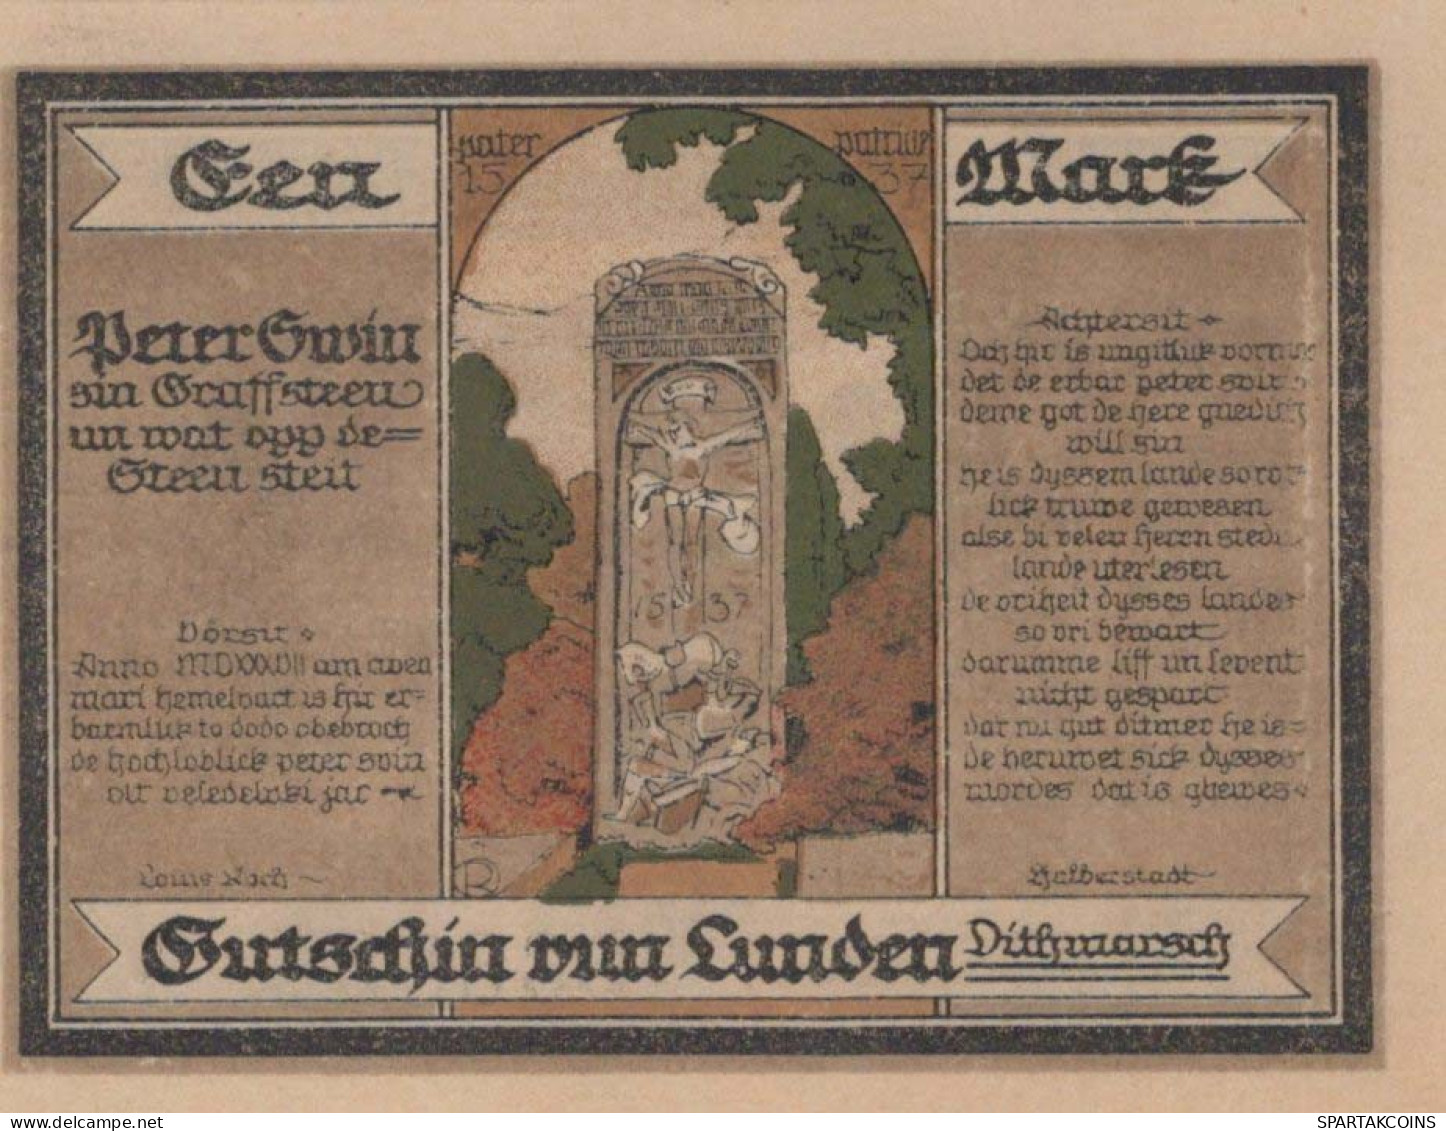 100 PFENNIG 1921 Stadt LUNDEN Schleswig-Holstein UNC DEUTSCHLAND Notgeld #PC659 - [11] Lokale Uitgaven